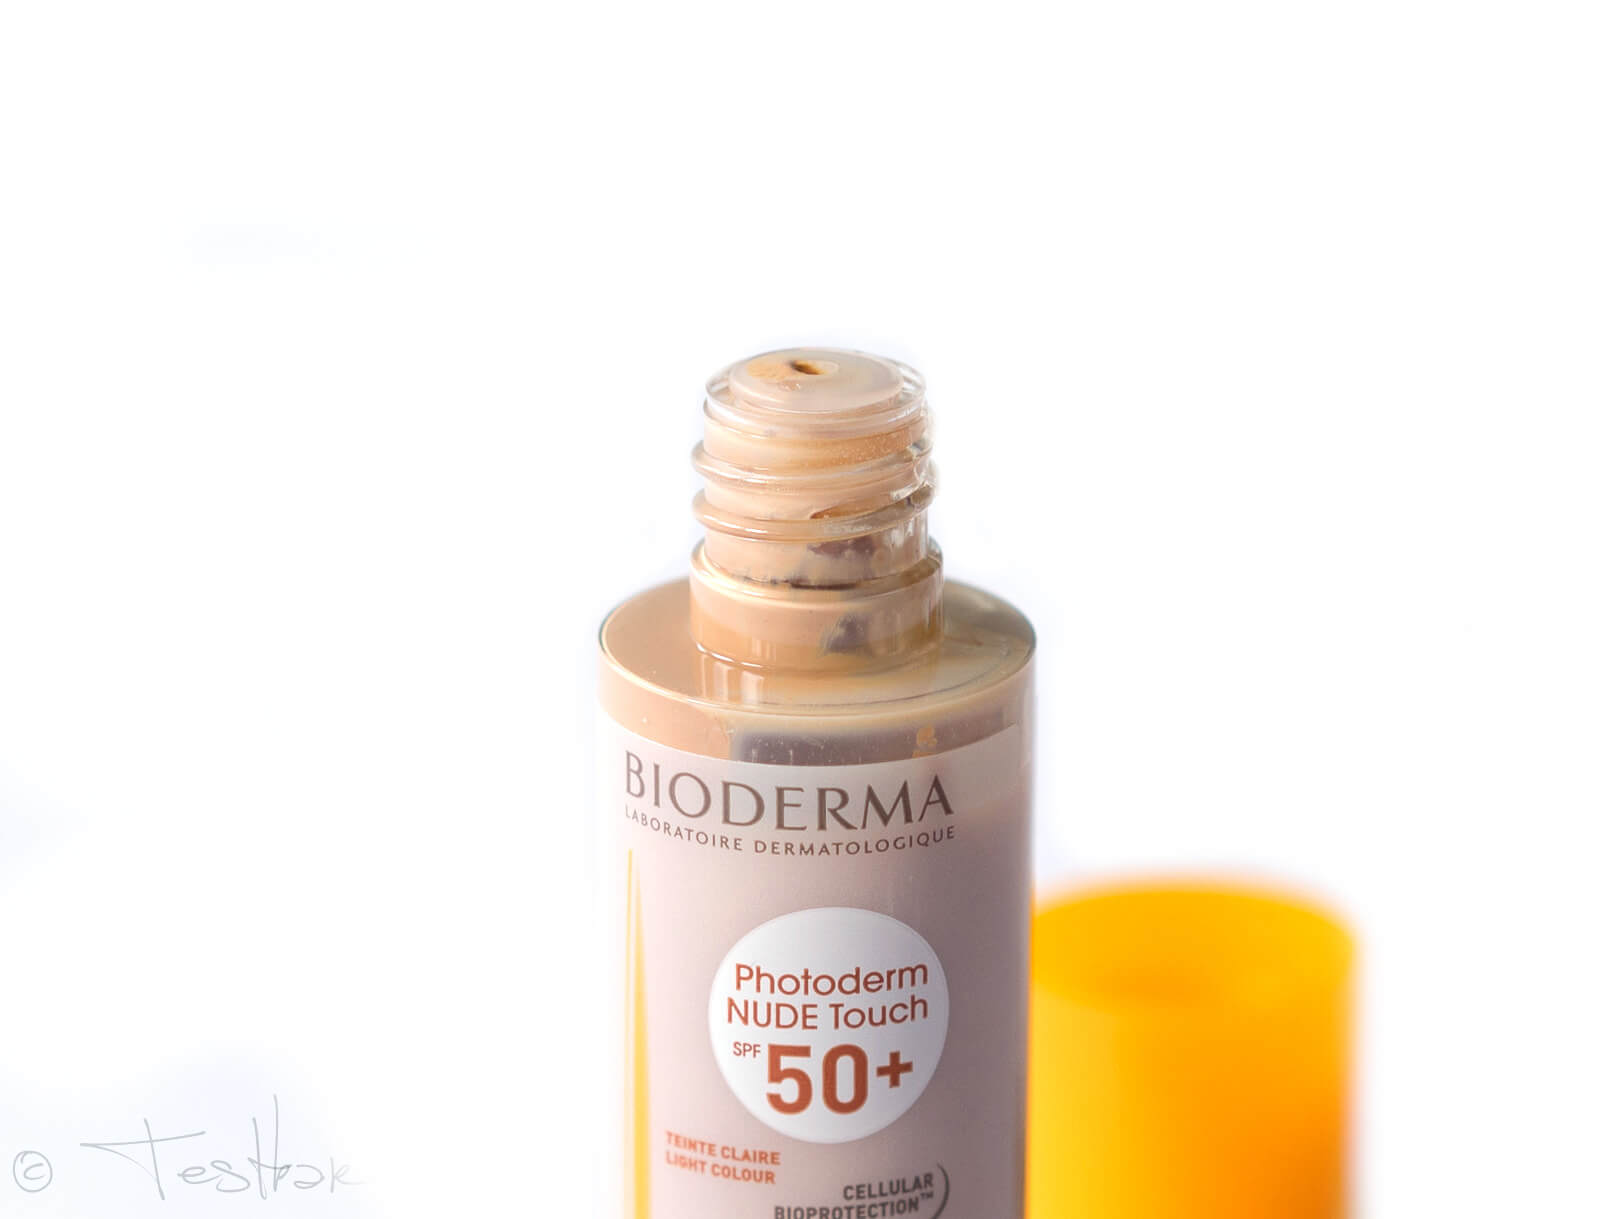 NEU - Mineralisches Sonnenschutz Make-up mit 8h Matt-Effekt - Photoderm NUDE Touch SPF 50+ von Bioderma